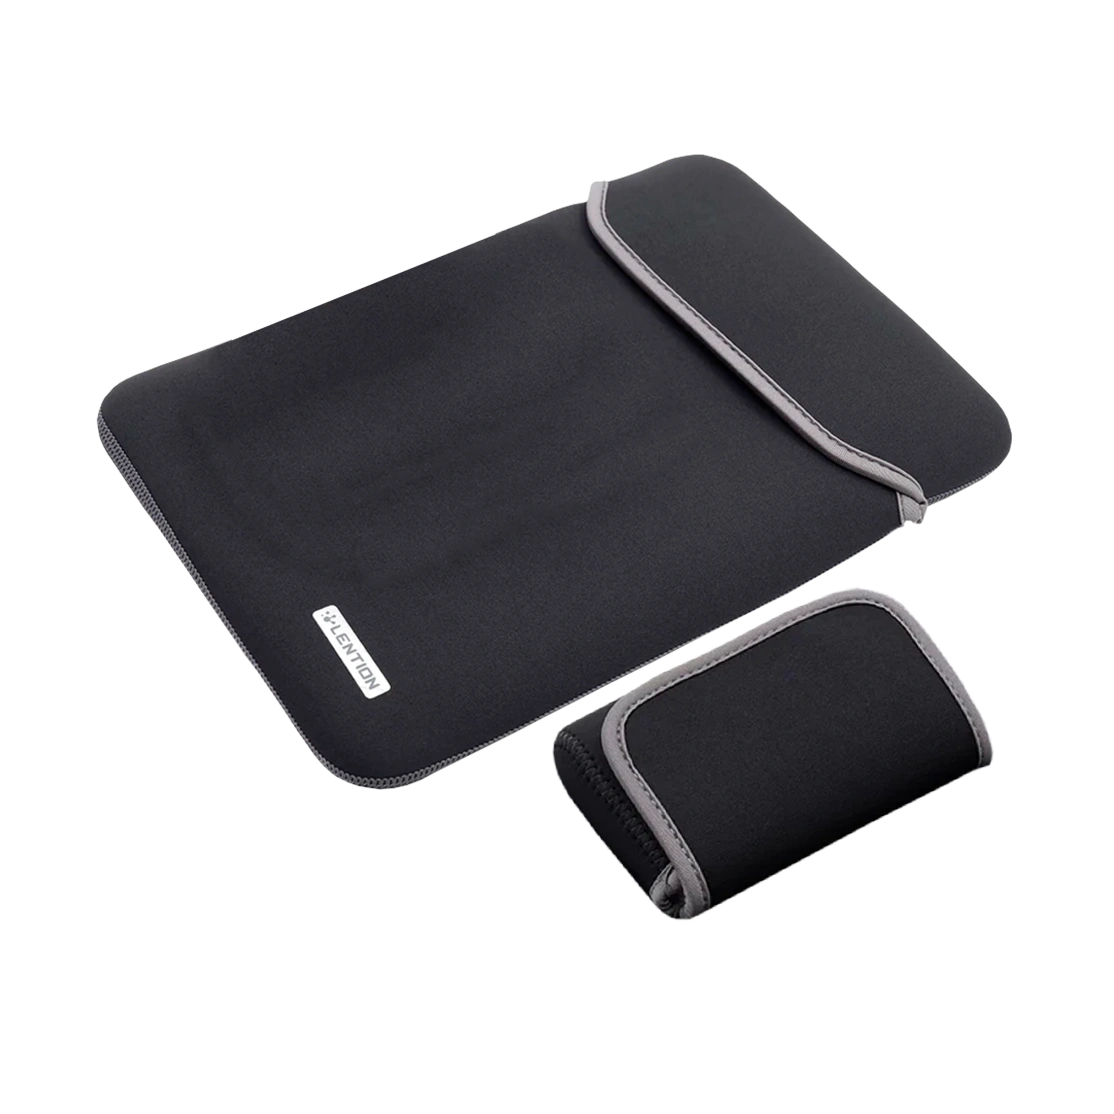 Lention Neoprene Sleeve Case for Macbook 13-inch PCB-B335